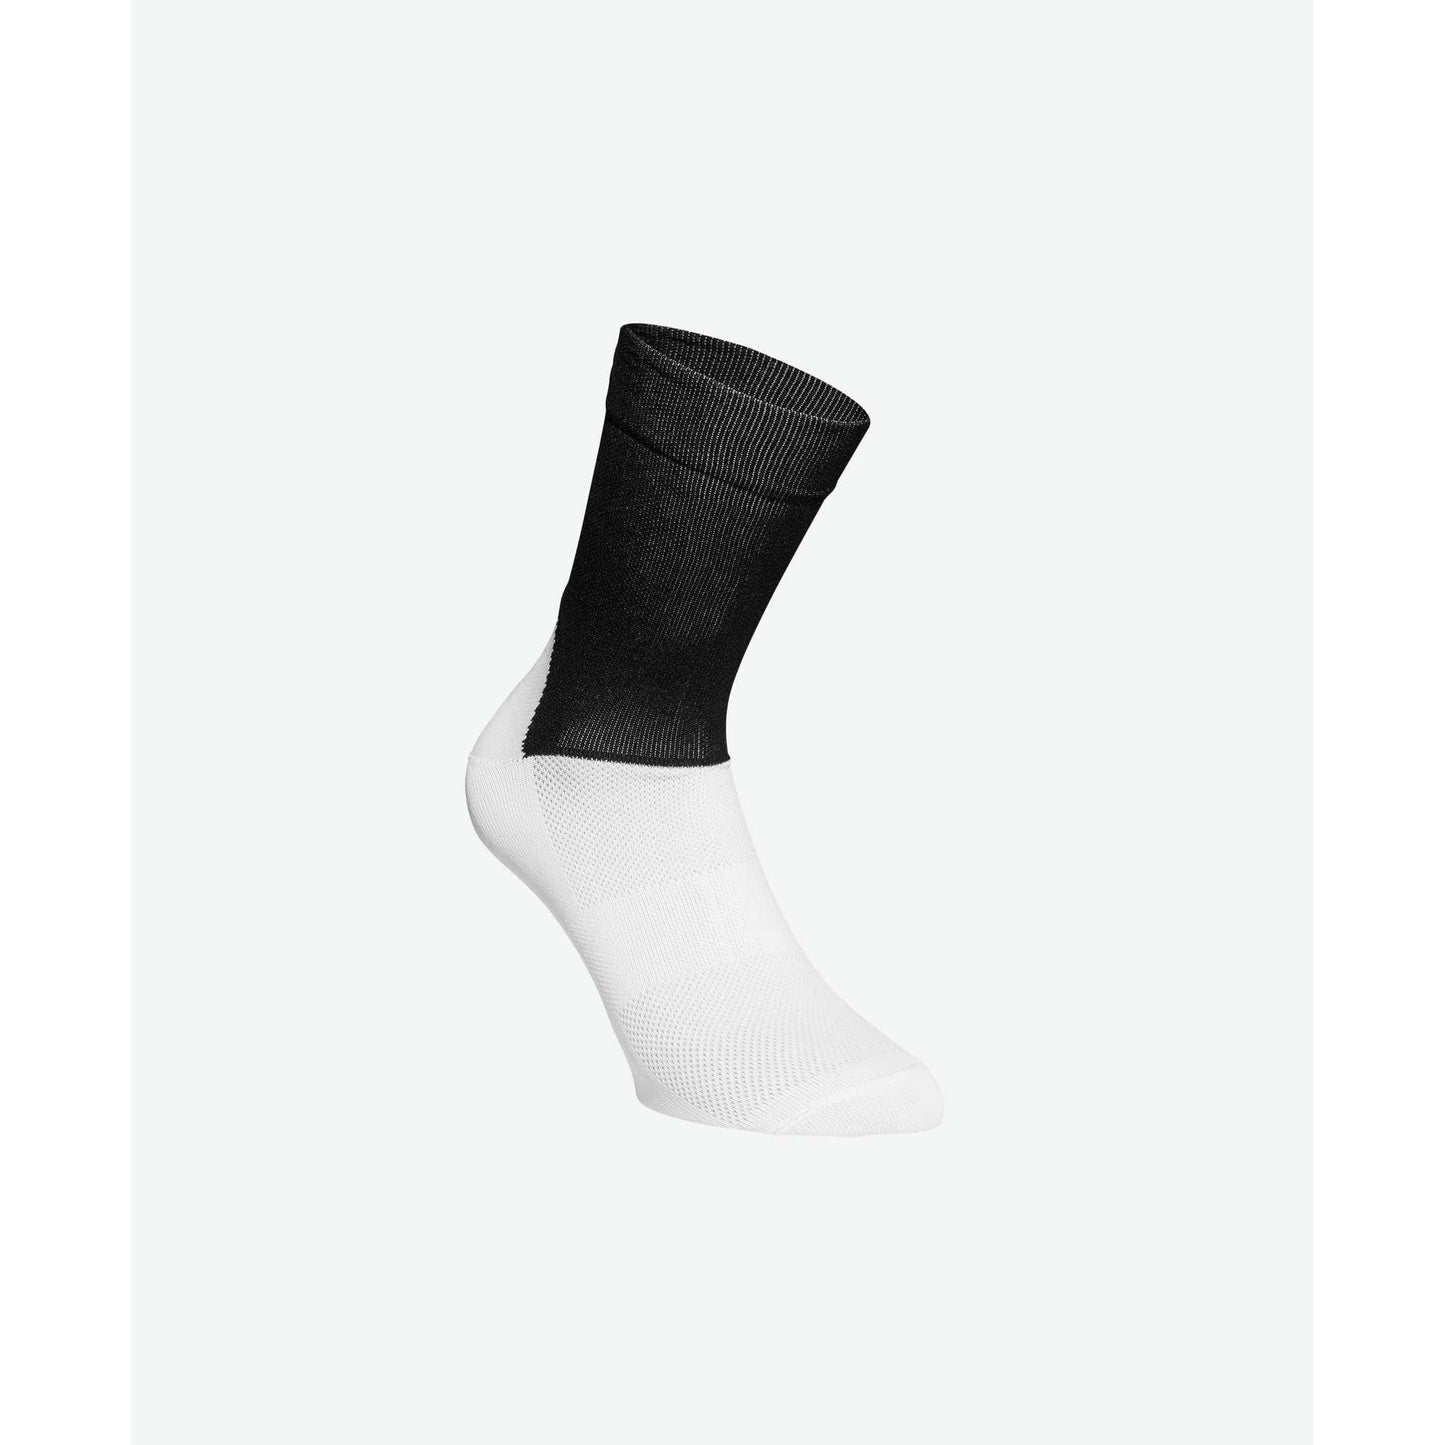 ソックス Essential Road Socks - Uranium Black/Hydrogen White [ユニセックス] 65110-8002 - STYLE BIKE ONLINE SHOP